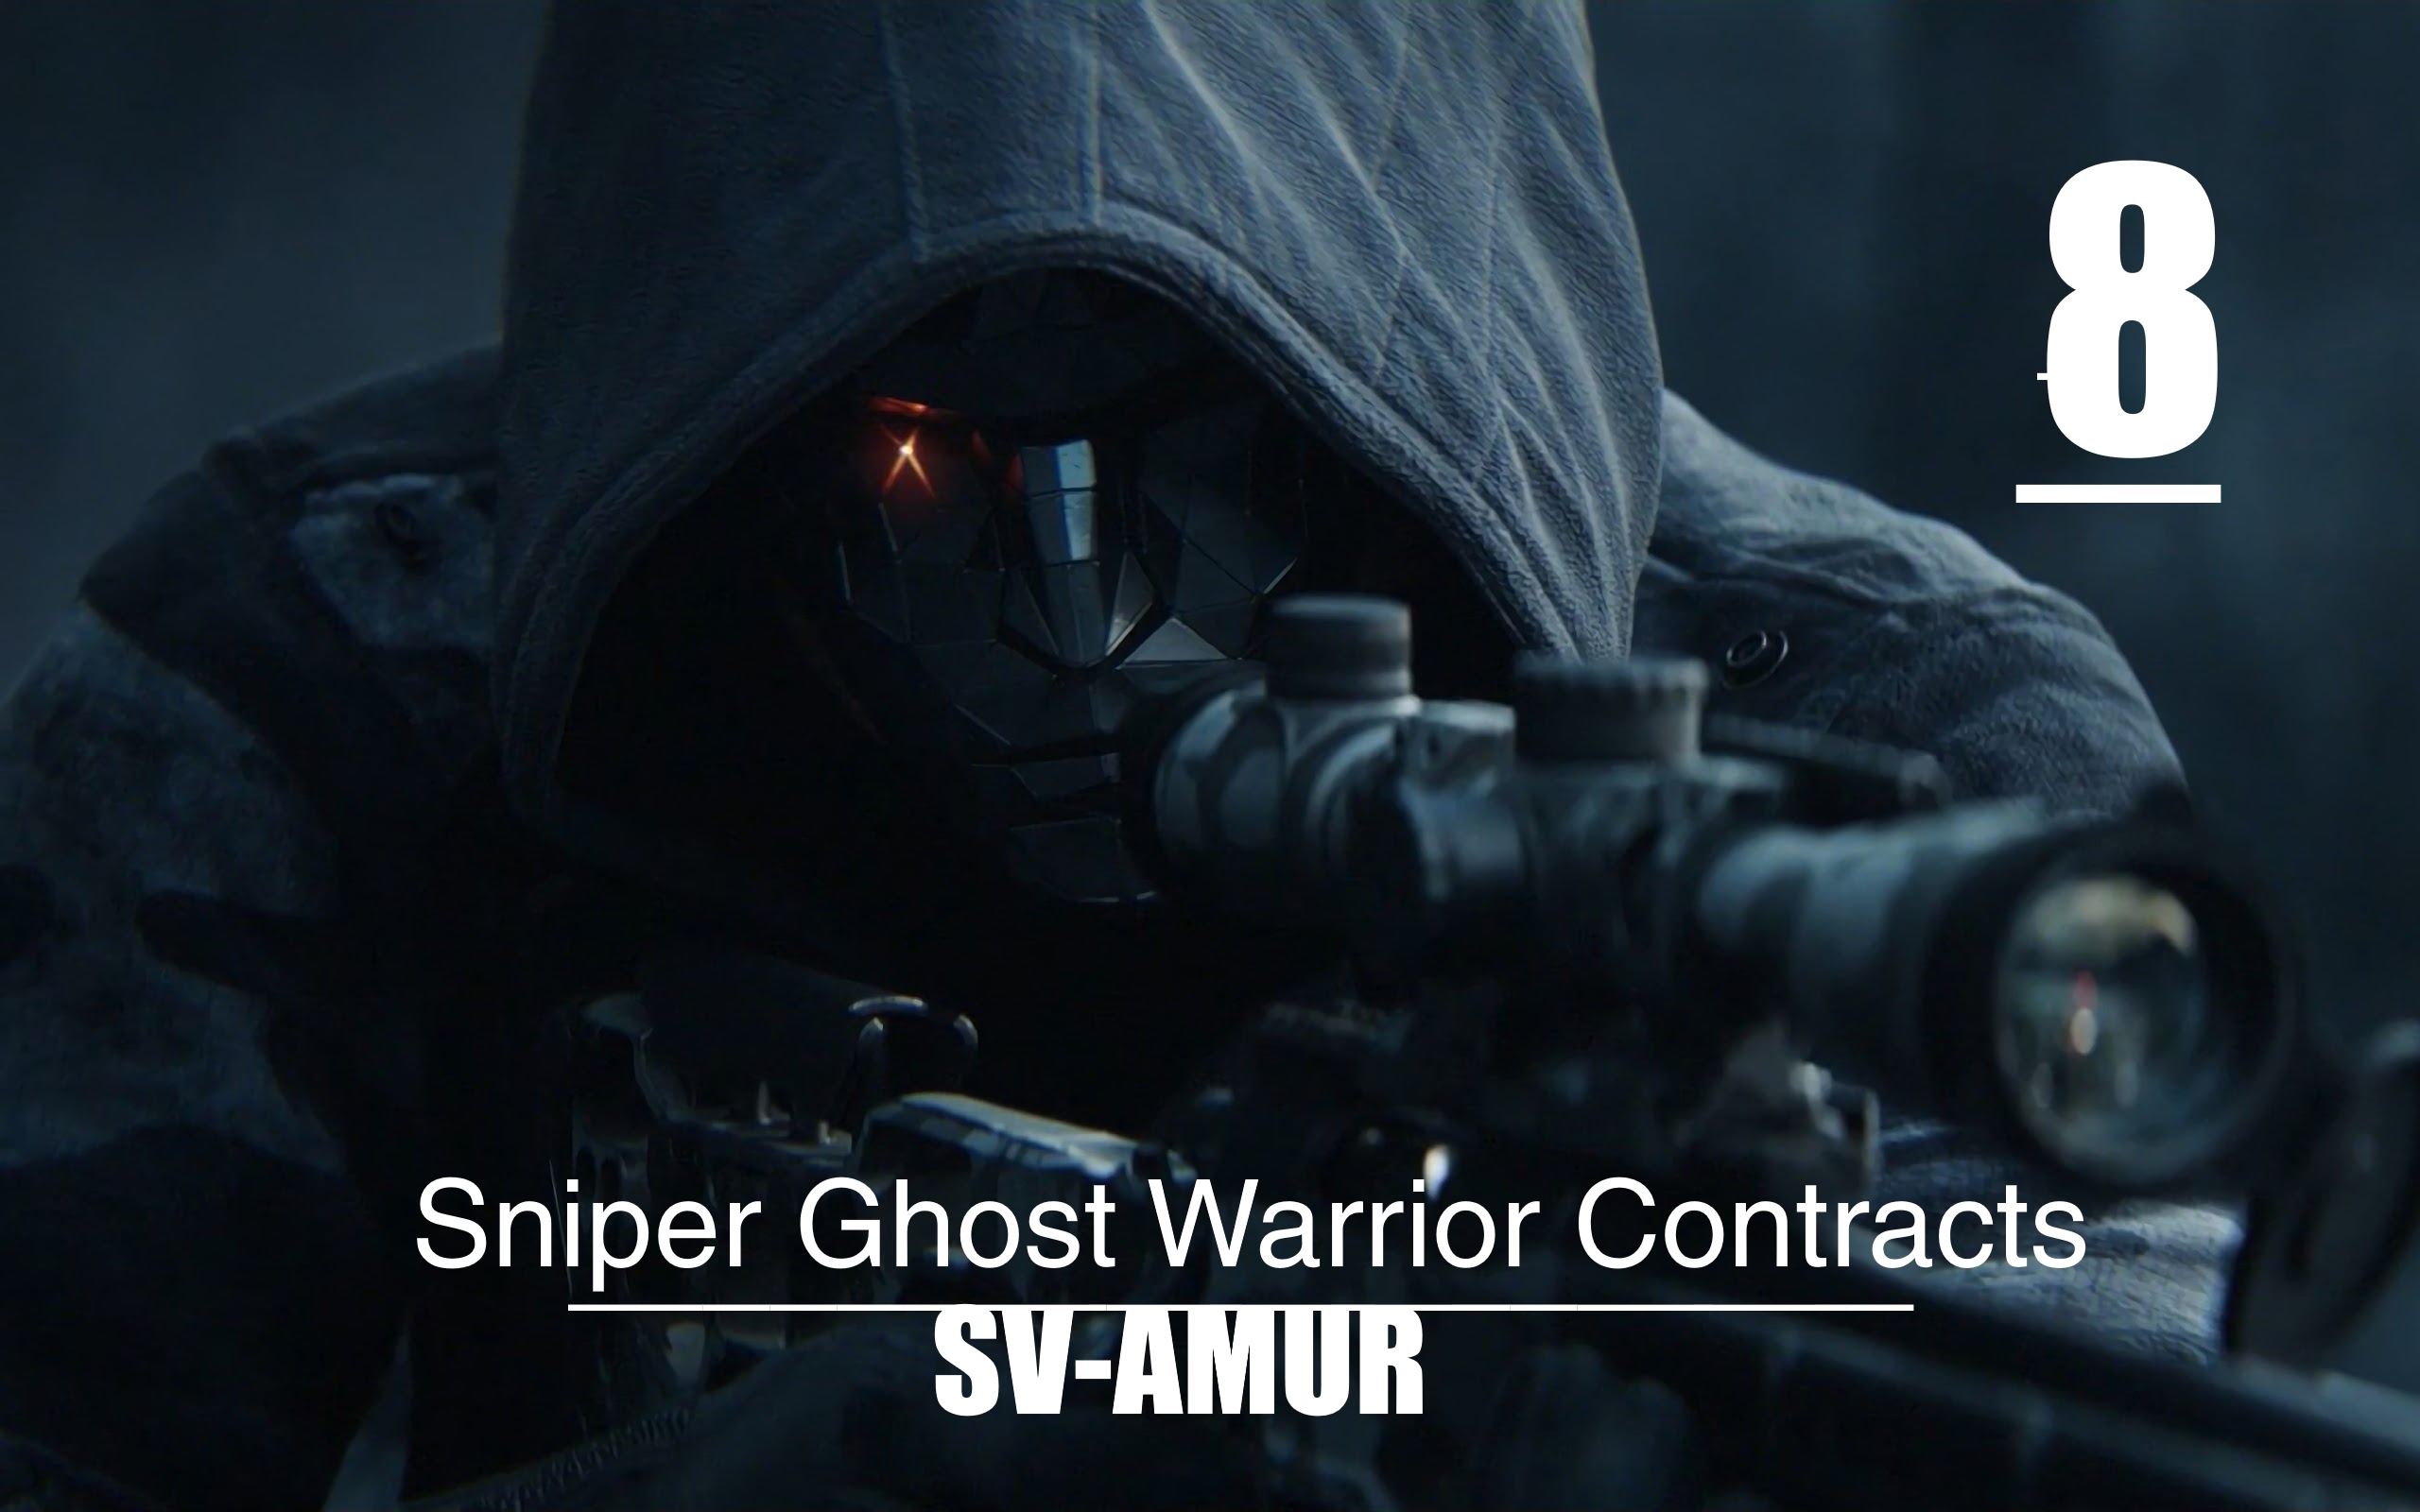 ▄︻デ══━一?[Sniper Ghost Warrior Contracts] : Ледокол и Си-4